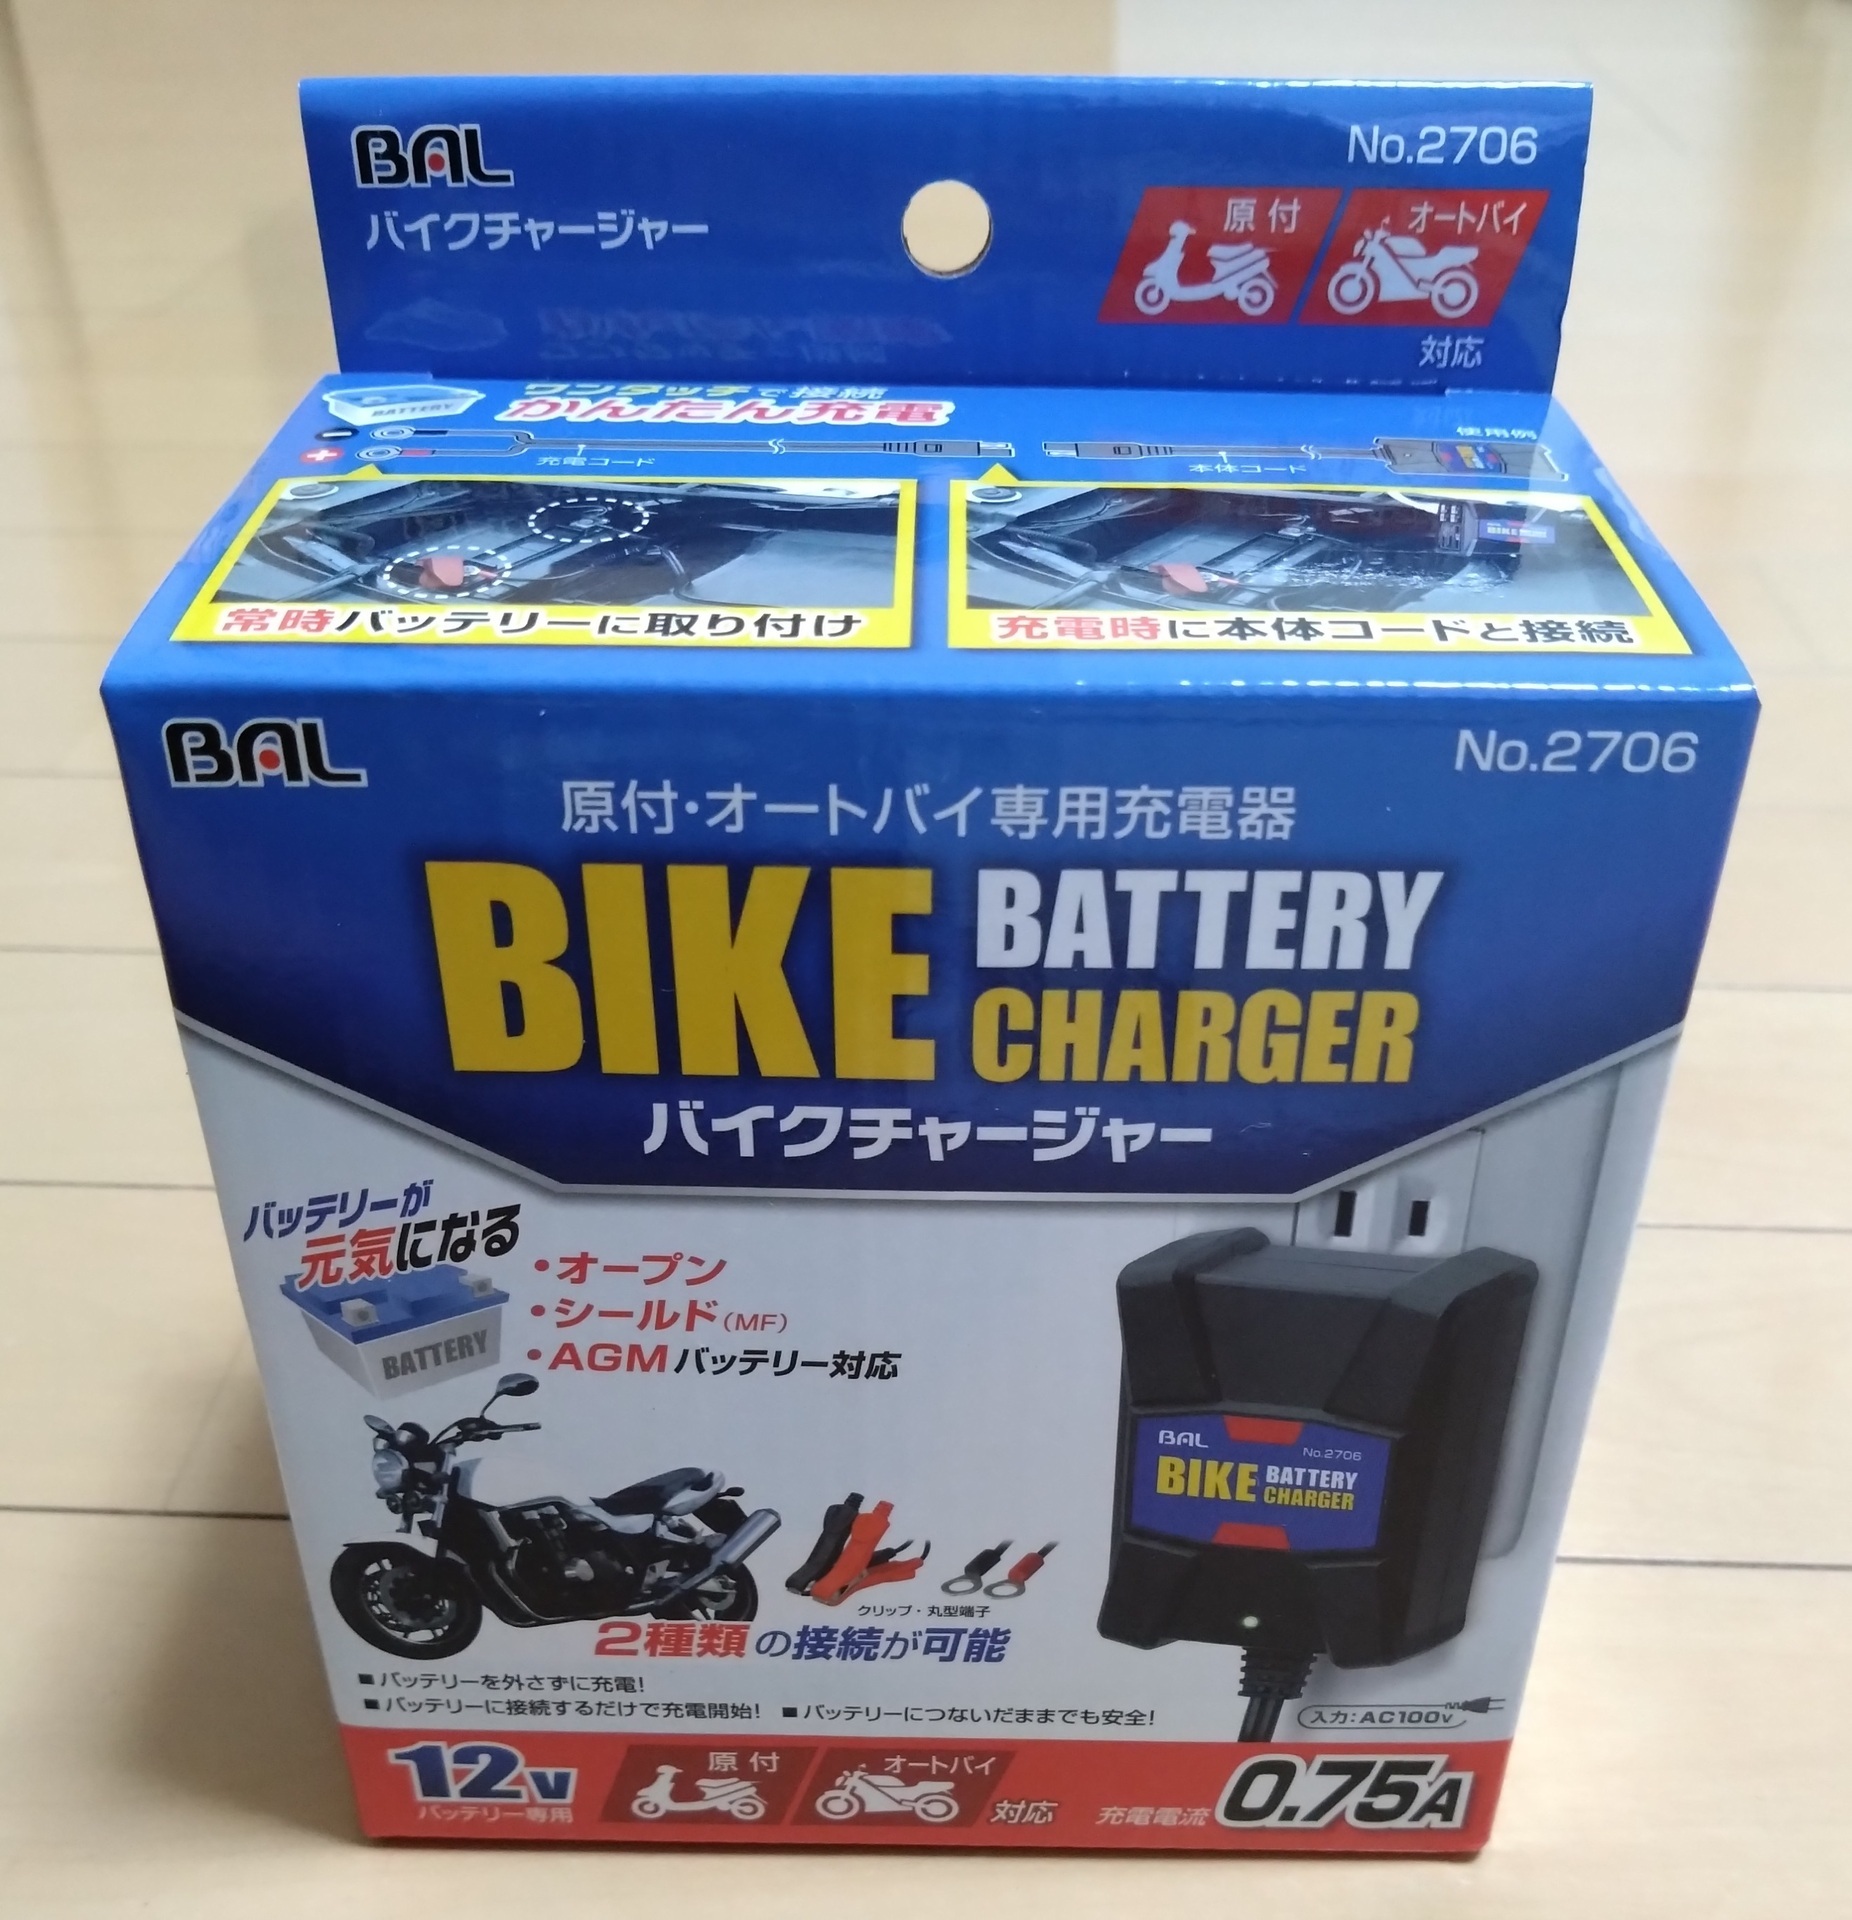 バイク CB125R バッテリー充電: Nerinoのブログ